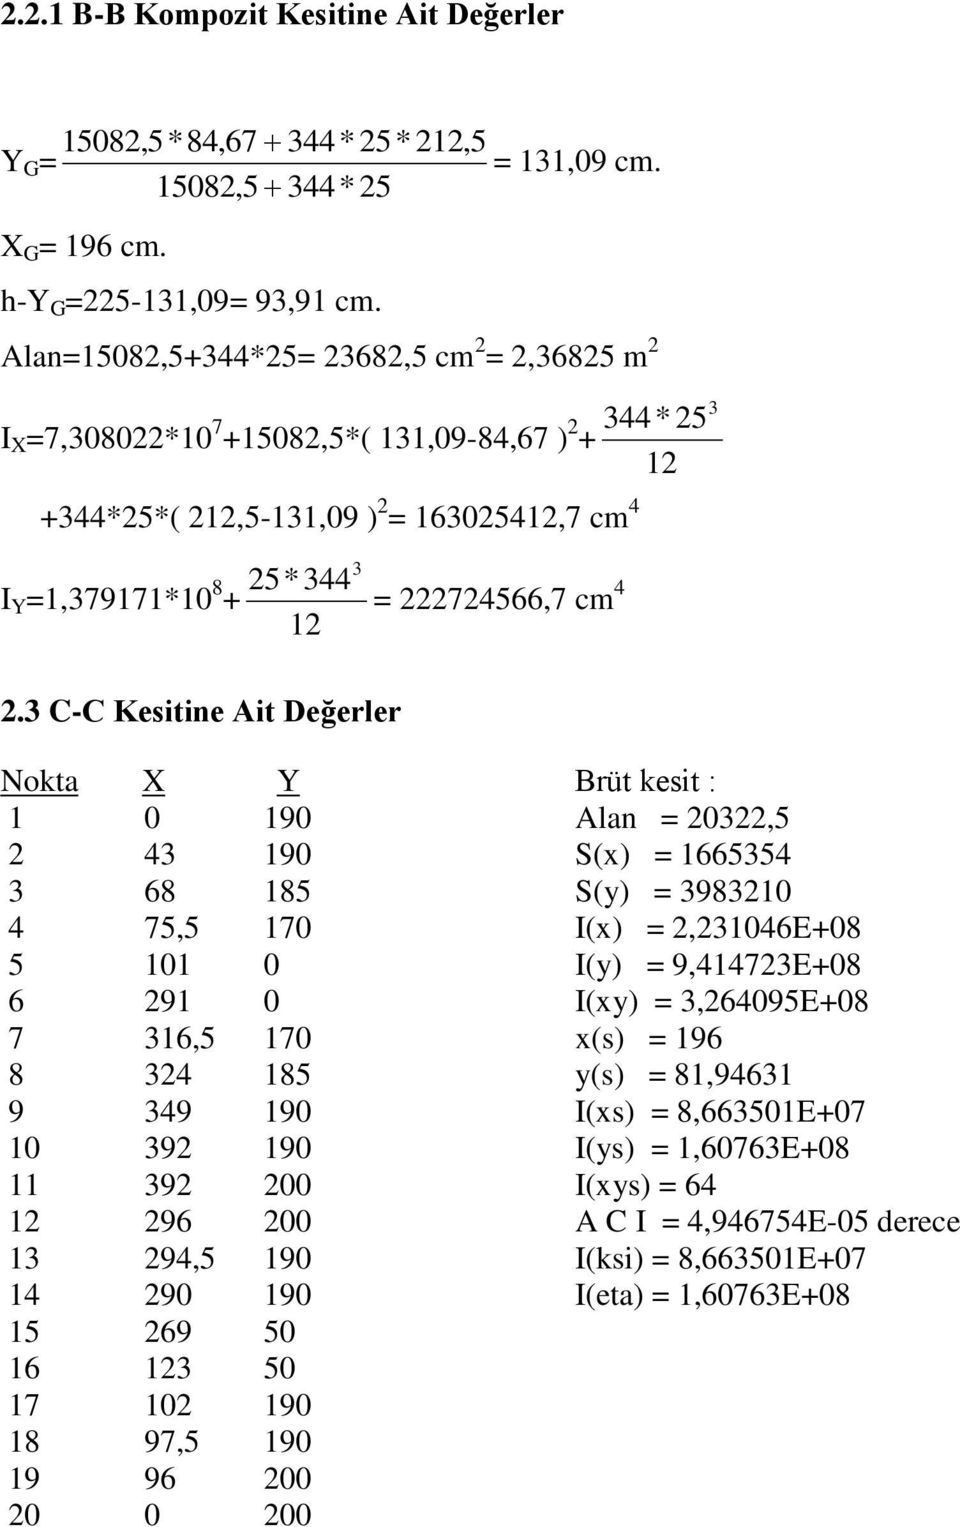 3 C-C Kesitine Ait Değerler Nokta X Y Brüt kesit : 1 0 190 Alan = 03,5 43 190 S(x) = 1665354 3 68 185 S(y) = 398310 4 75,5 170 I(x) =,31046E+08 5 101 0 I(y) = 9,41473E+08 6 91 0 I(xy) = 3,64095E+08